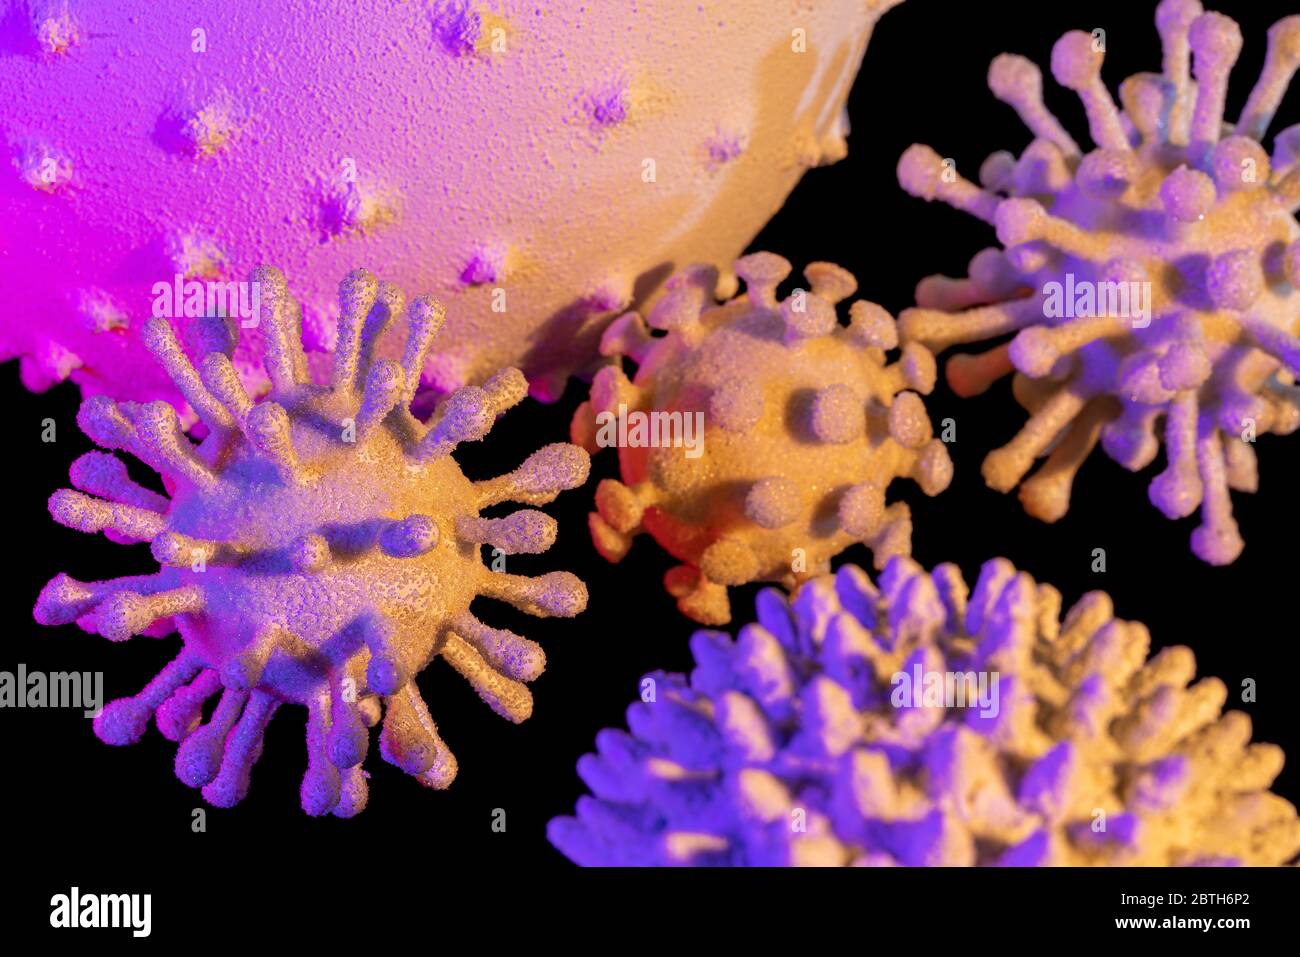 immagine di alcuni colorati virus simbolici illuminati in nero sul retro Foto Stock